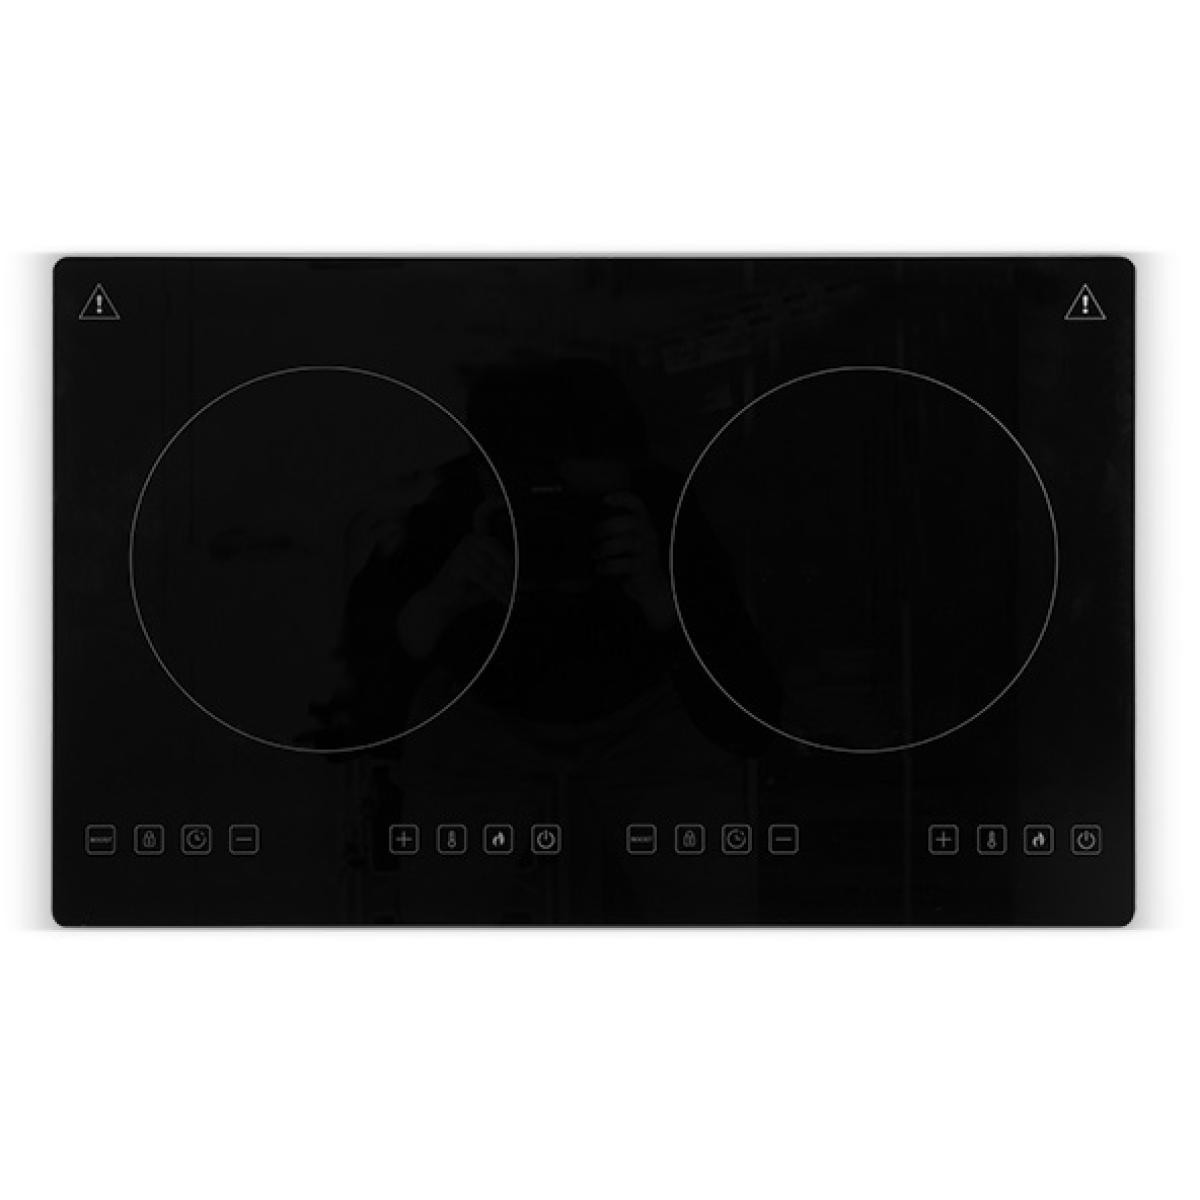 AMSTA – AMHP87264 – Plaque de cuisson – Induction – Posable – 2 foyers – Puissance 3500 watts – Arrêt automatique – Noir